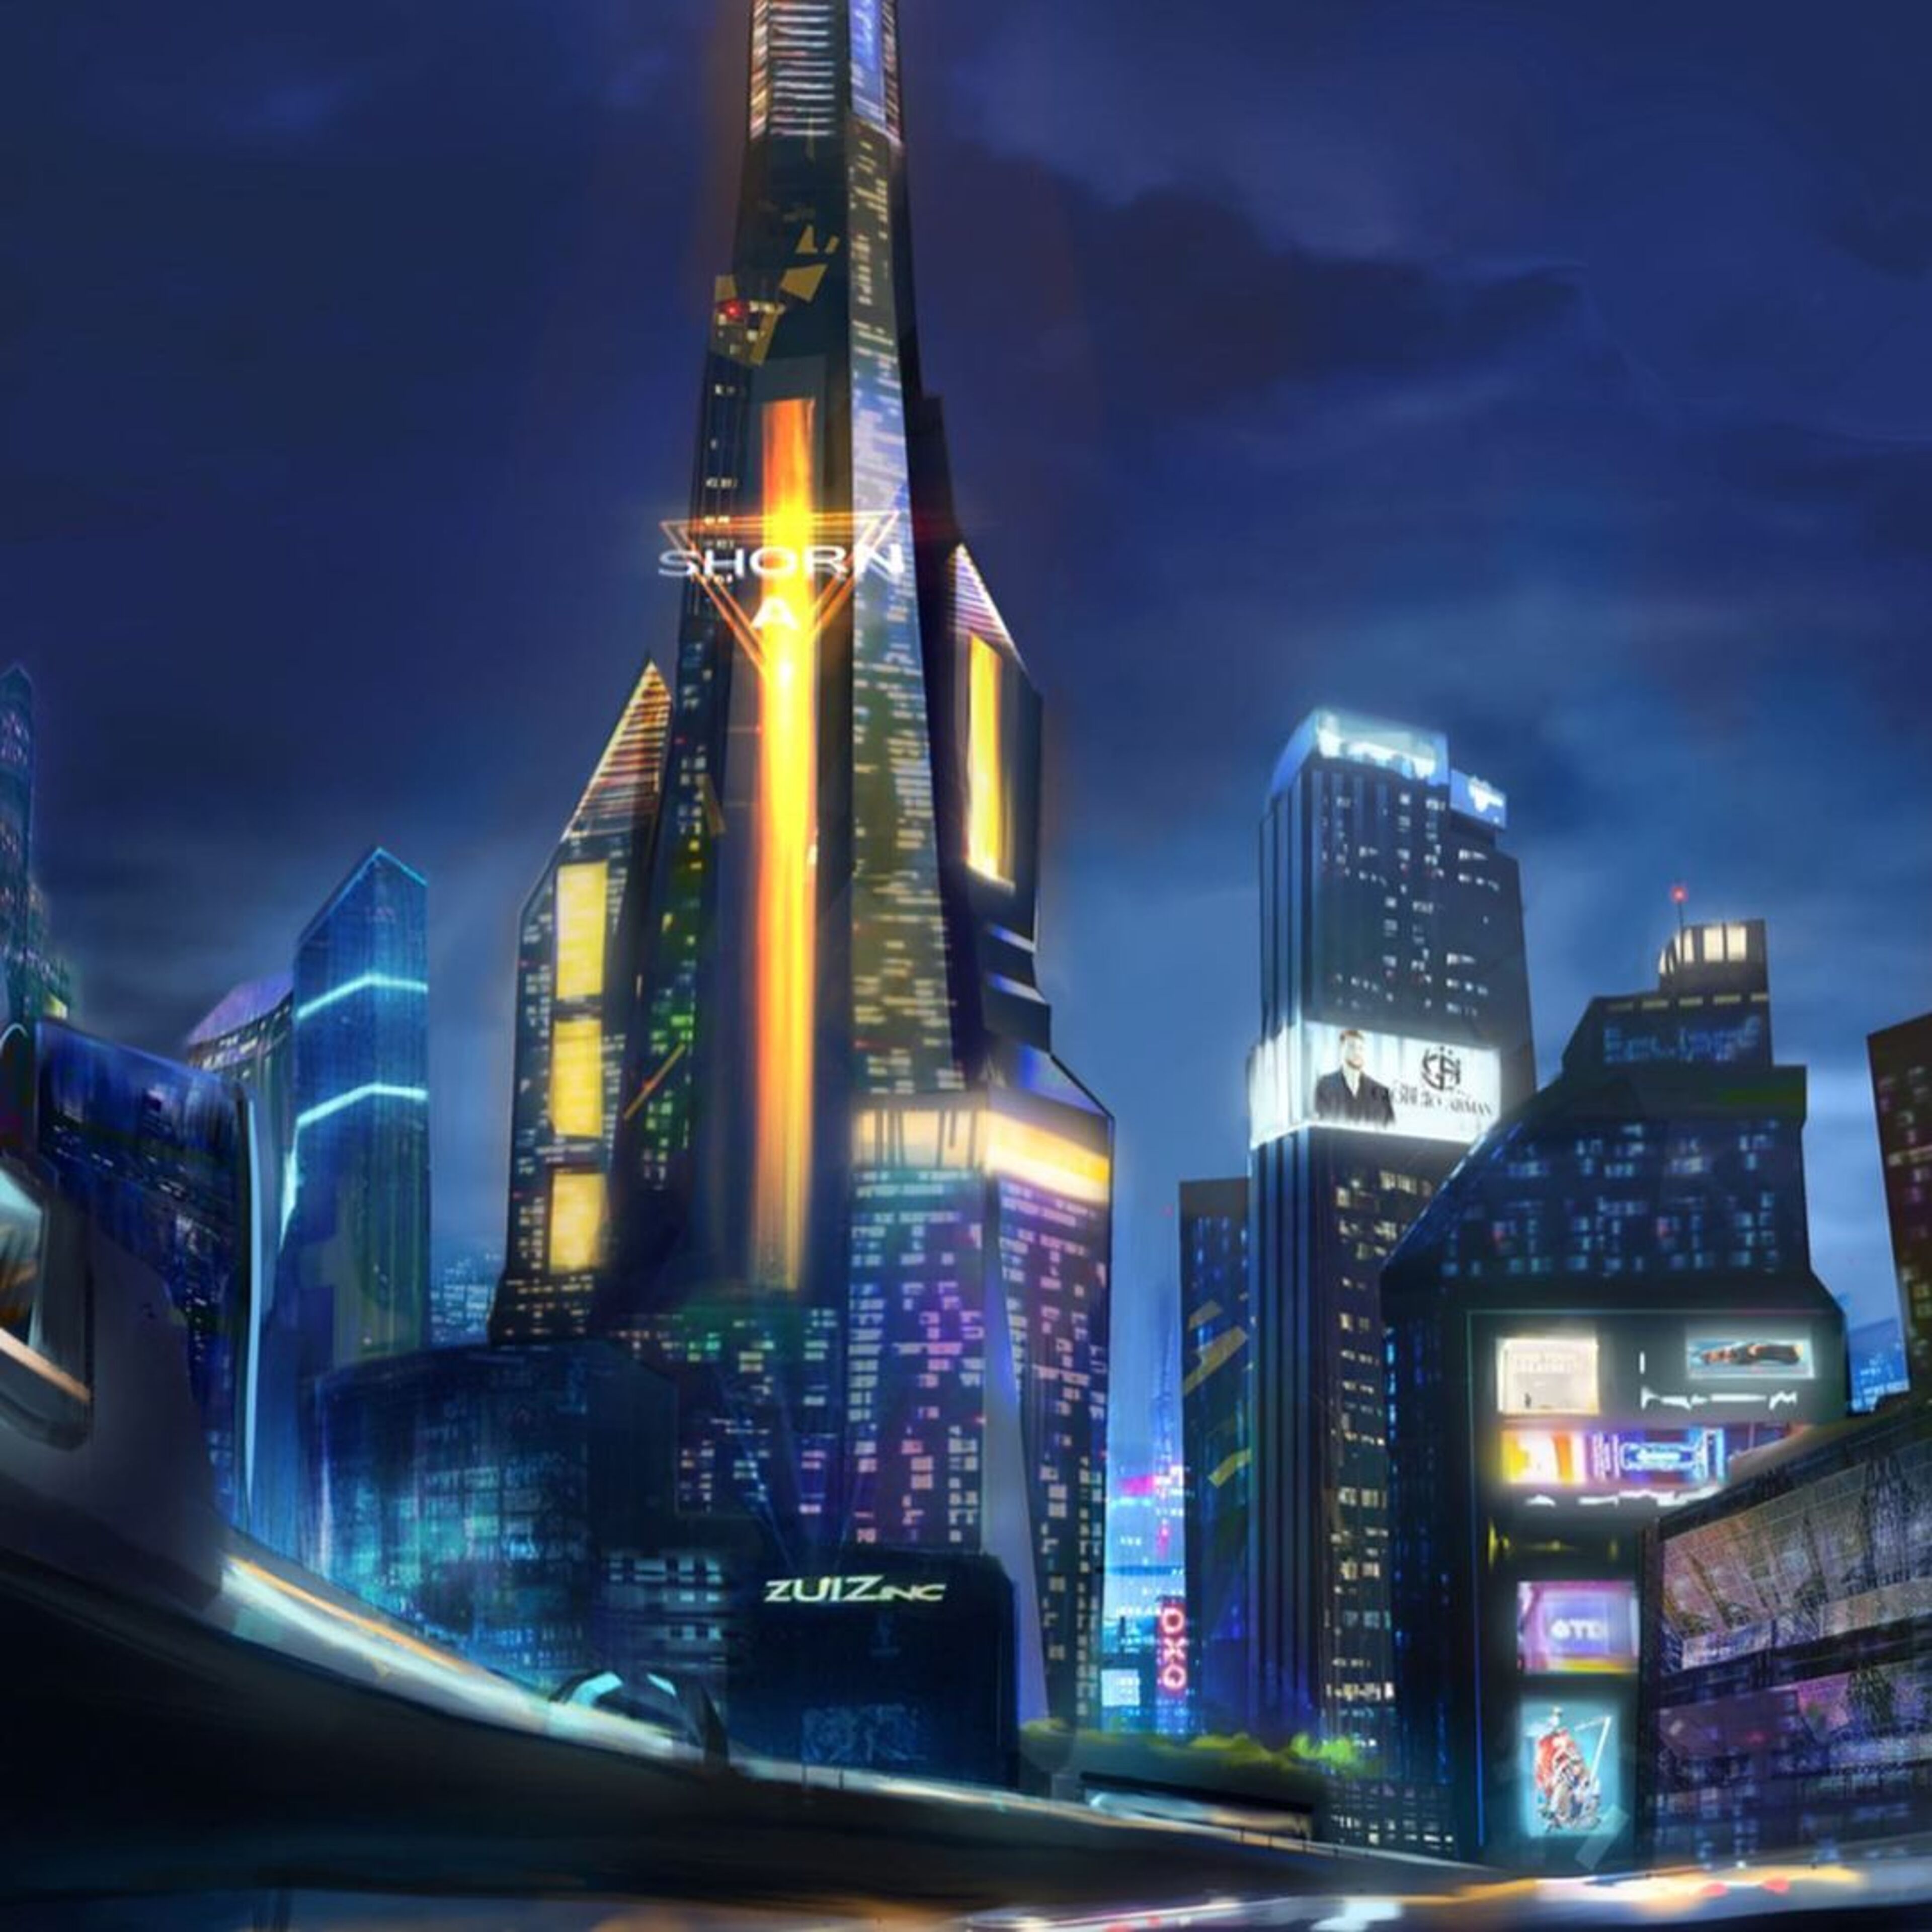 Un imponente rascacielos central domina una ciudad vibrante por la noche, iluminada por letreros de neón y el brillo de numerosas ventanas.